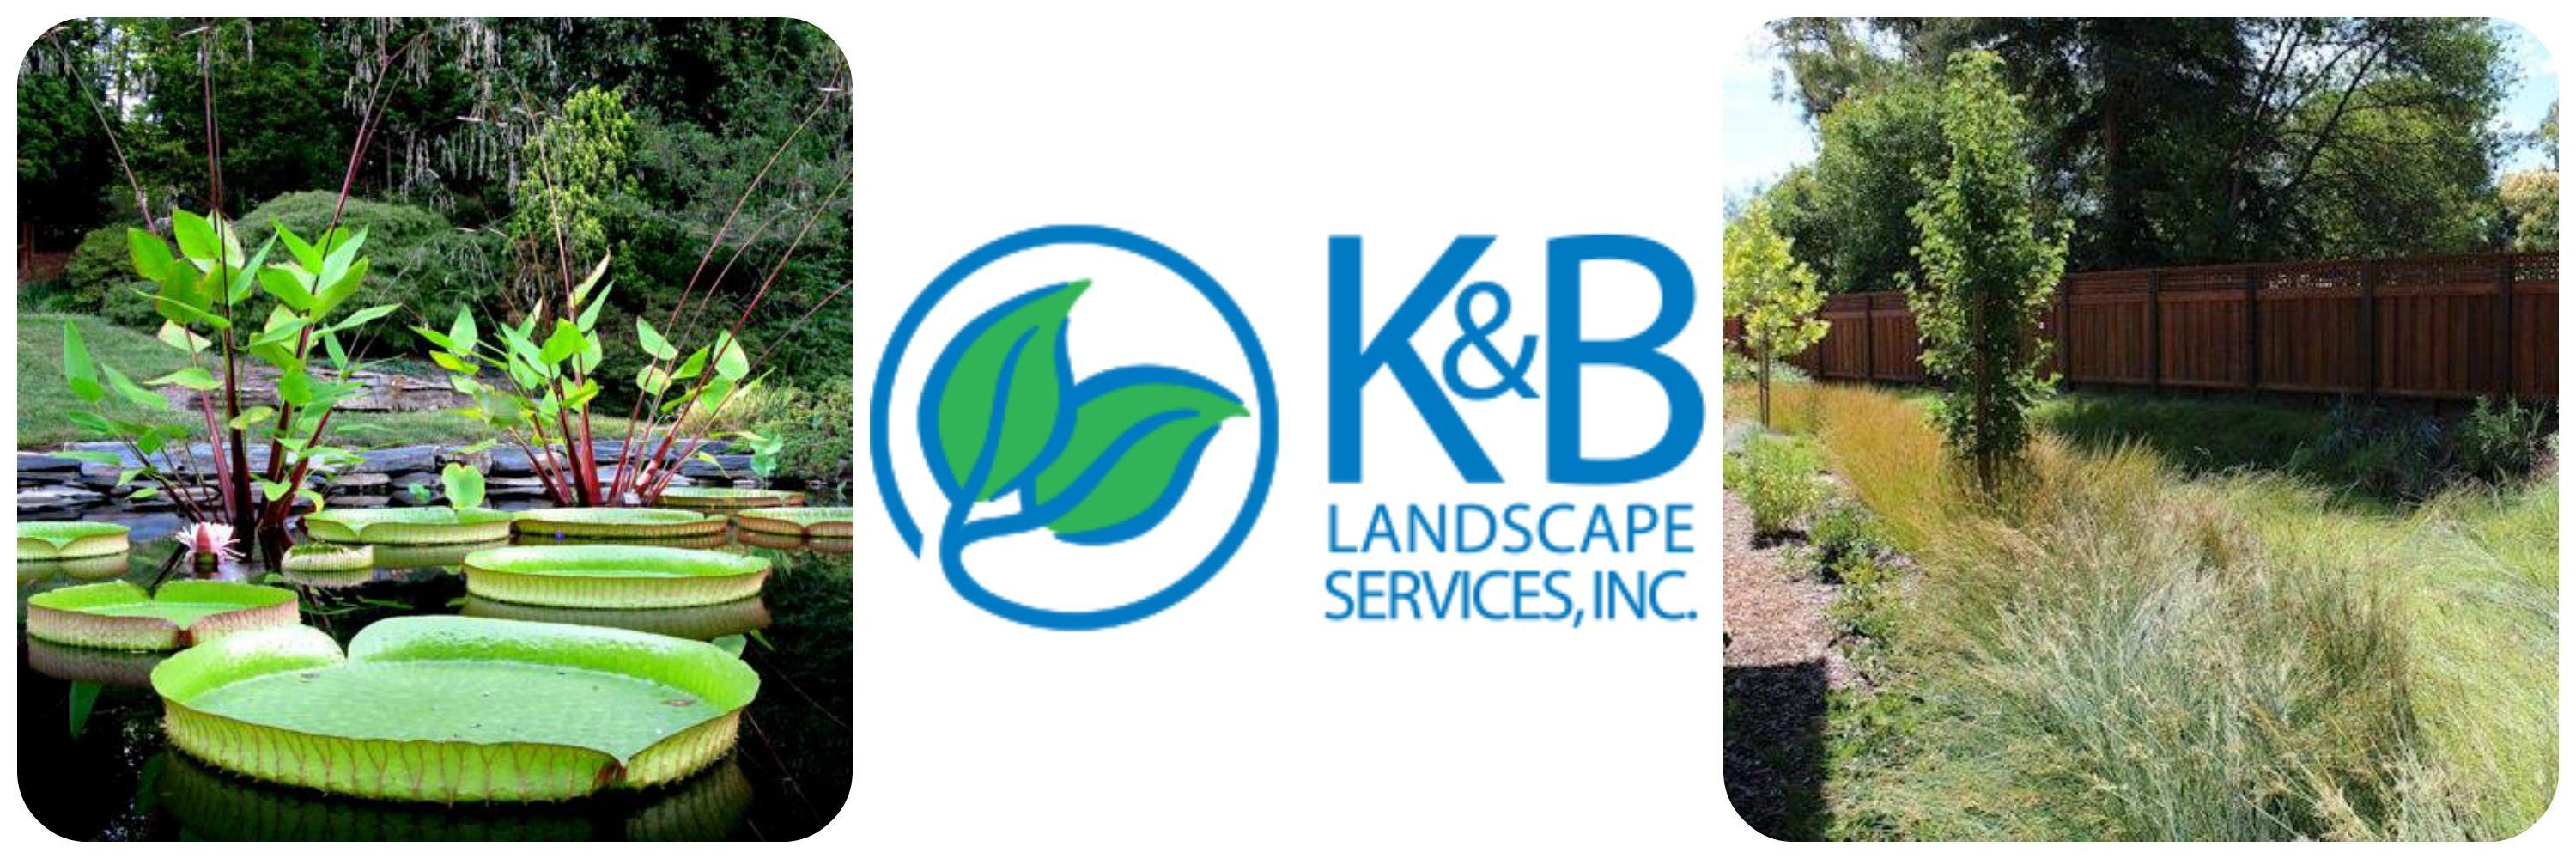 Landscape Services B Logo - HO! PL 2017 04 Company: K & B Landscape Gardens